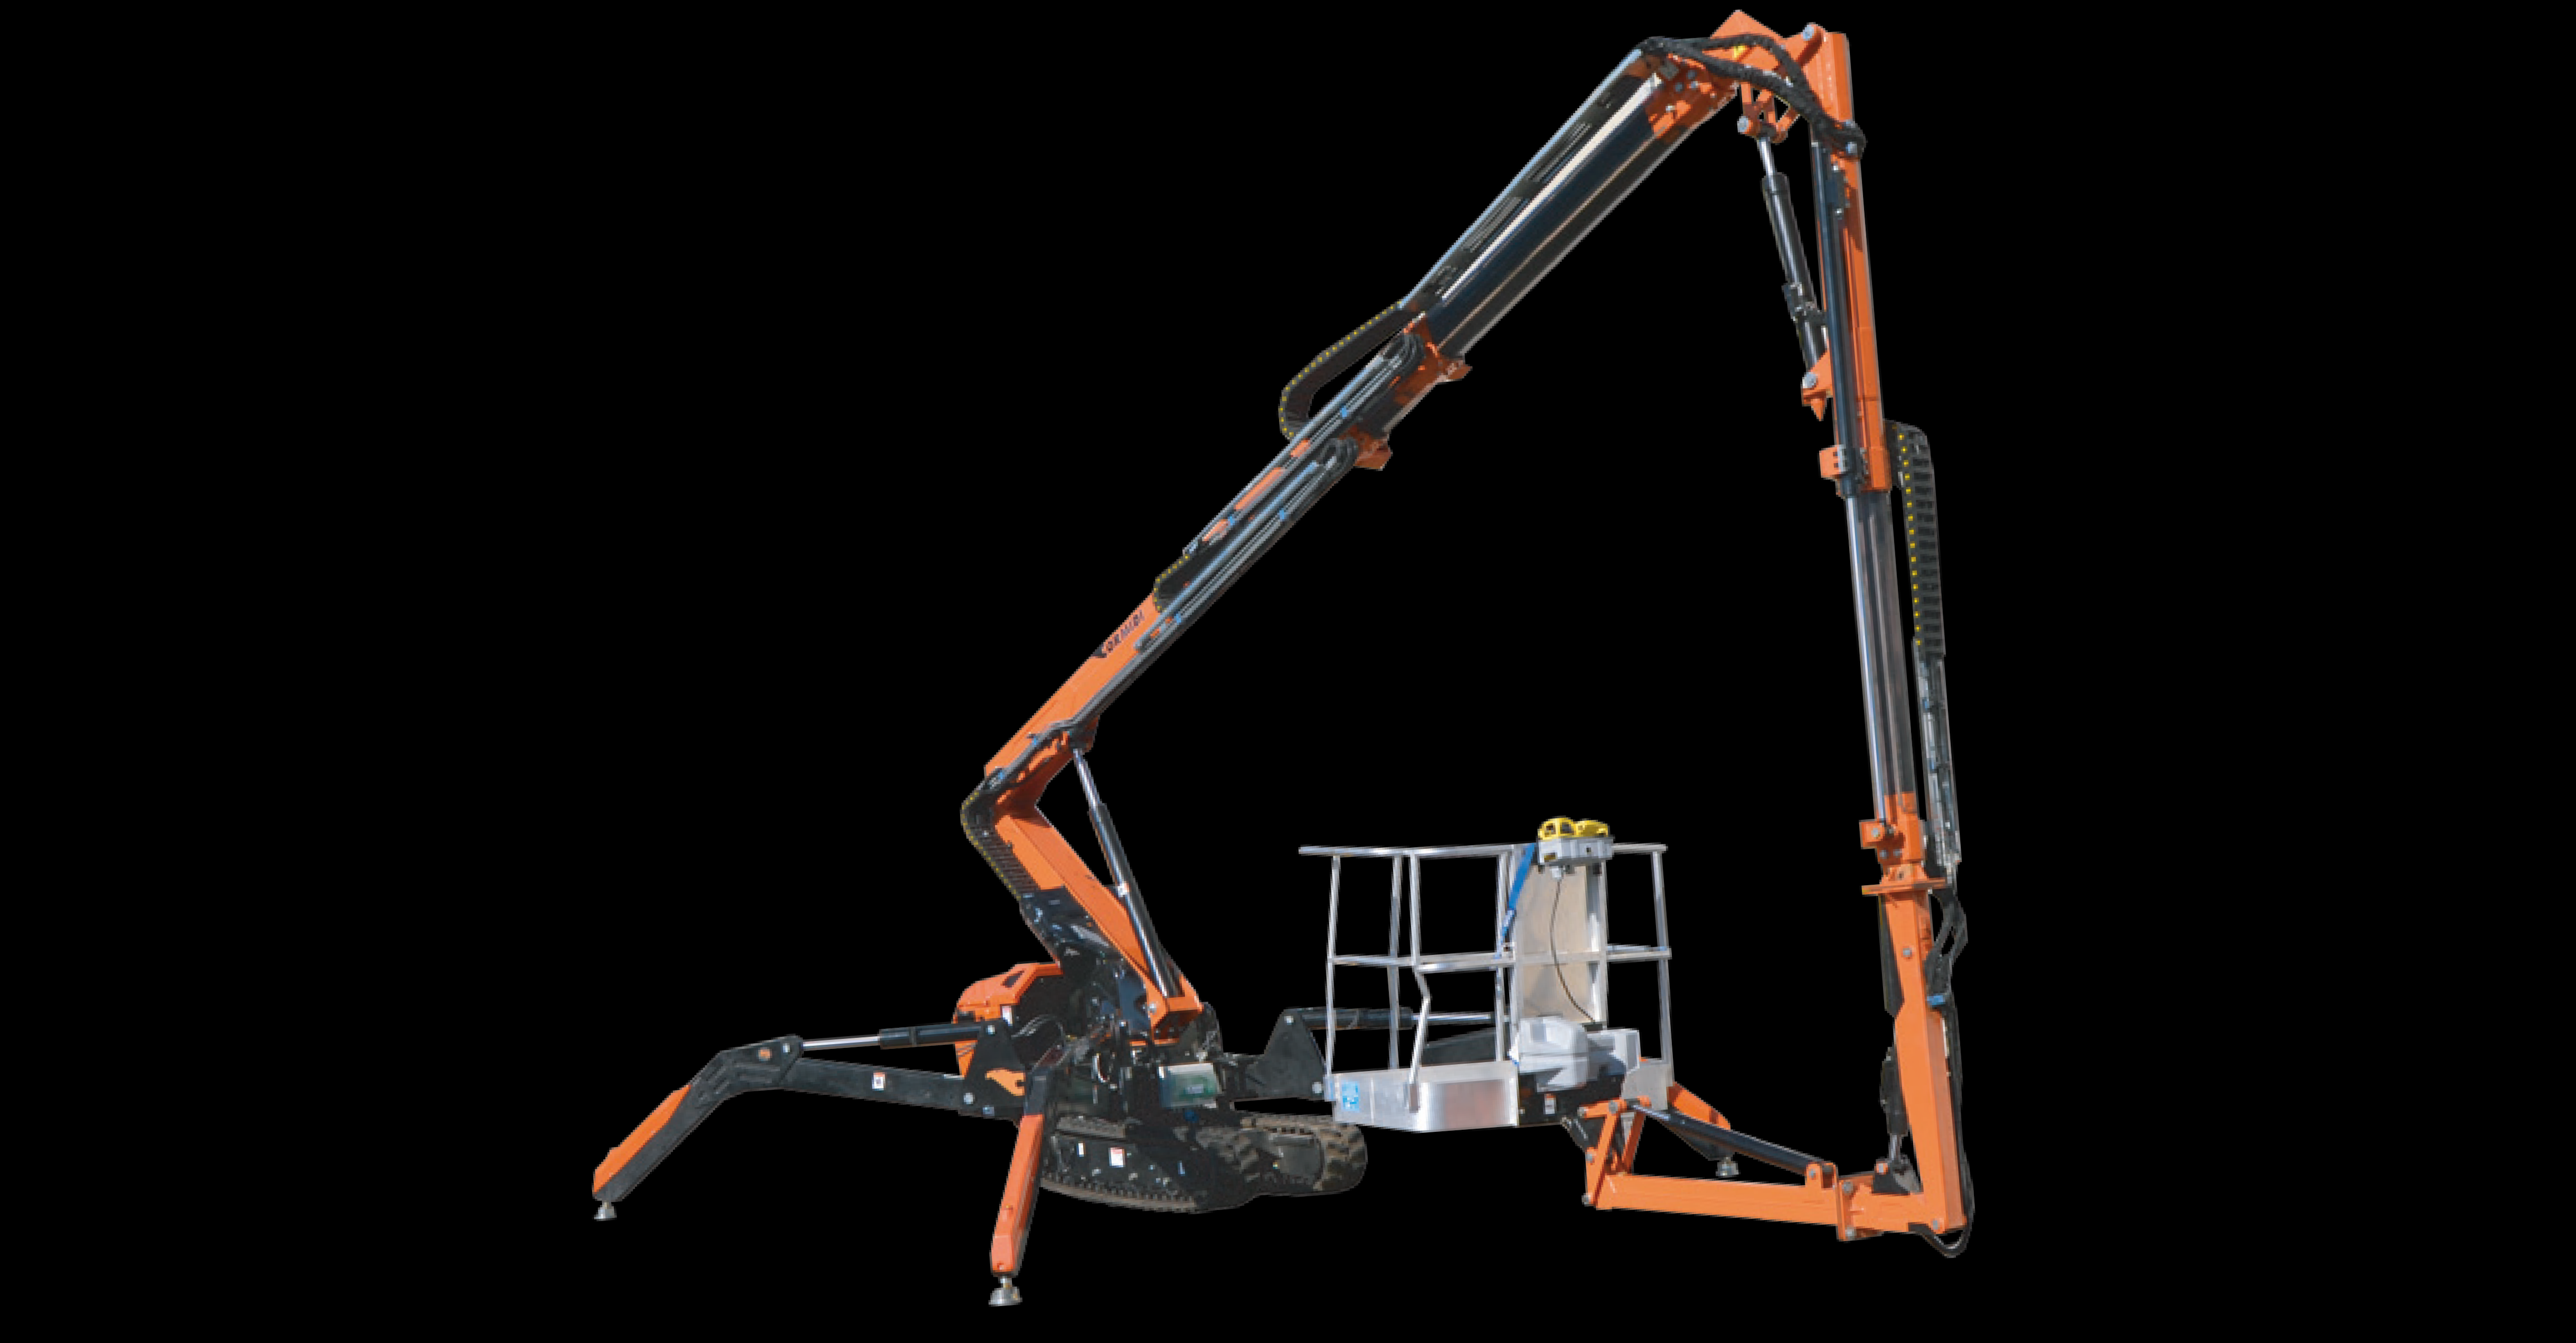 Spider Cranes & Aerial Work Platform